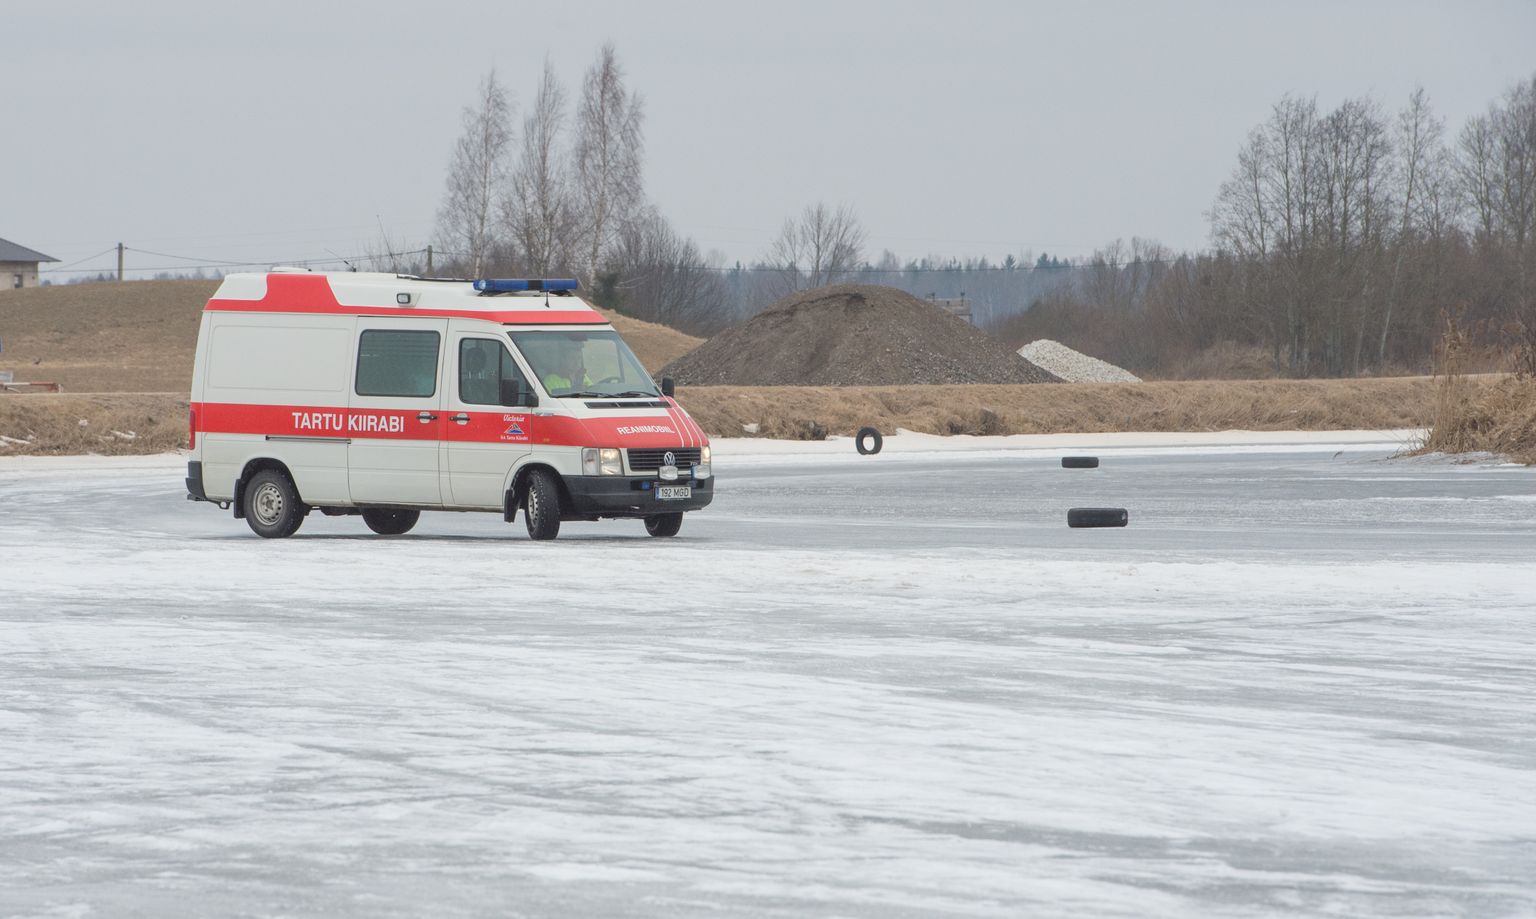 Eelmise aasta veebruaris said kiirabi­autojuhid Ilmatsalu paisjärve jäärajal kätt harjutada. Ilmatsalu jäärajameister Keven Ratnik pakub selle võimaluse operatiiv­sõidukite juhtidele välja ka tänavu.